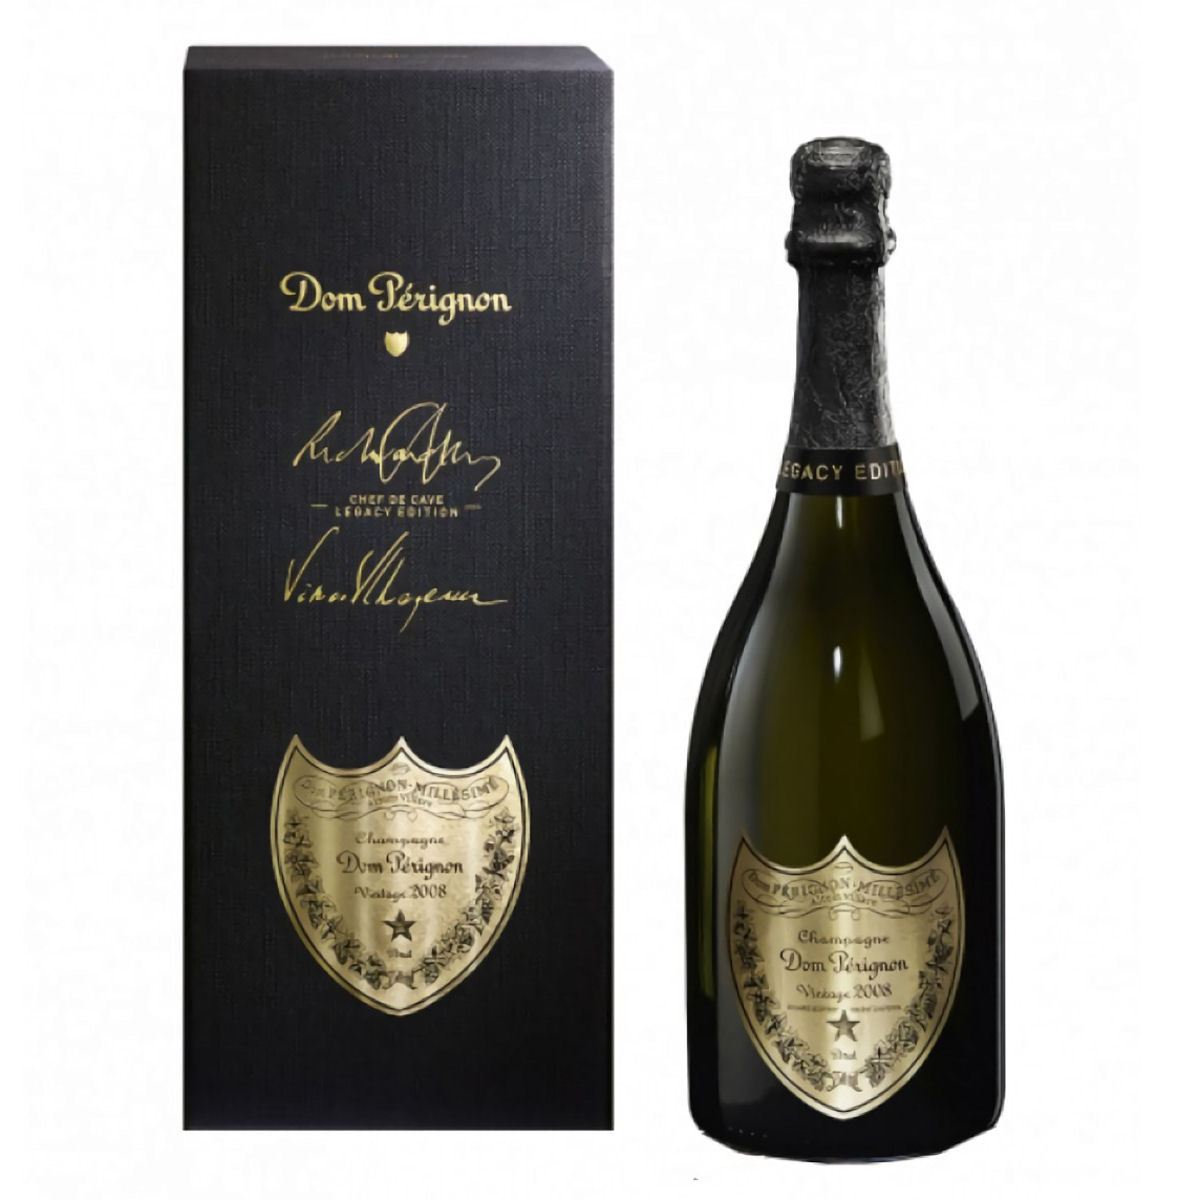 Champagne Dom Pérignon 2010 - La Cave - Bora Bora